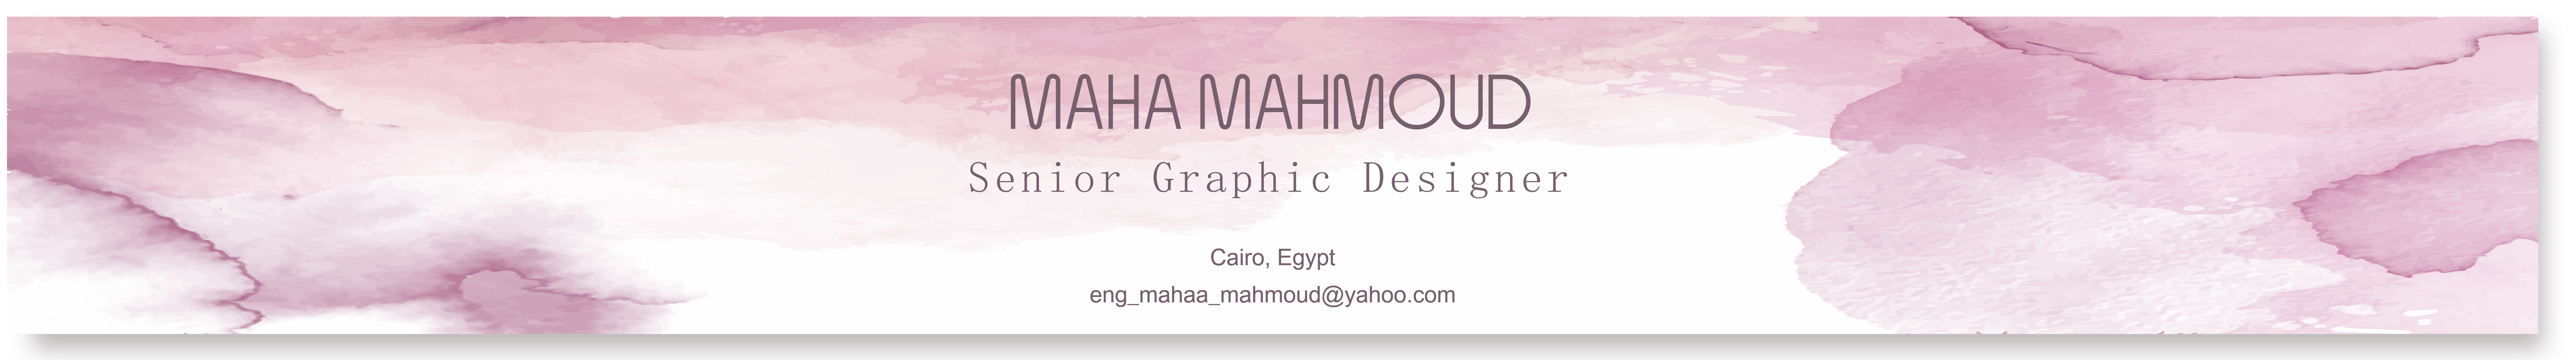 Maha Mahmoud のプロファイルバナー